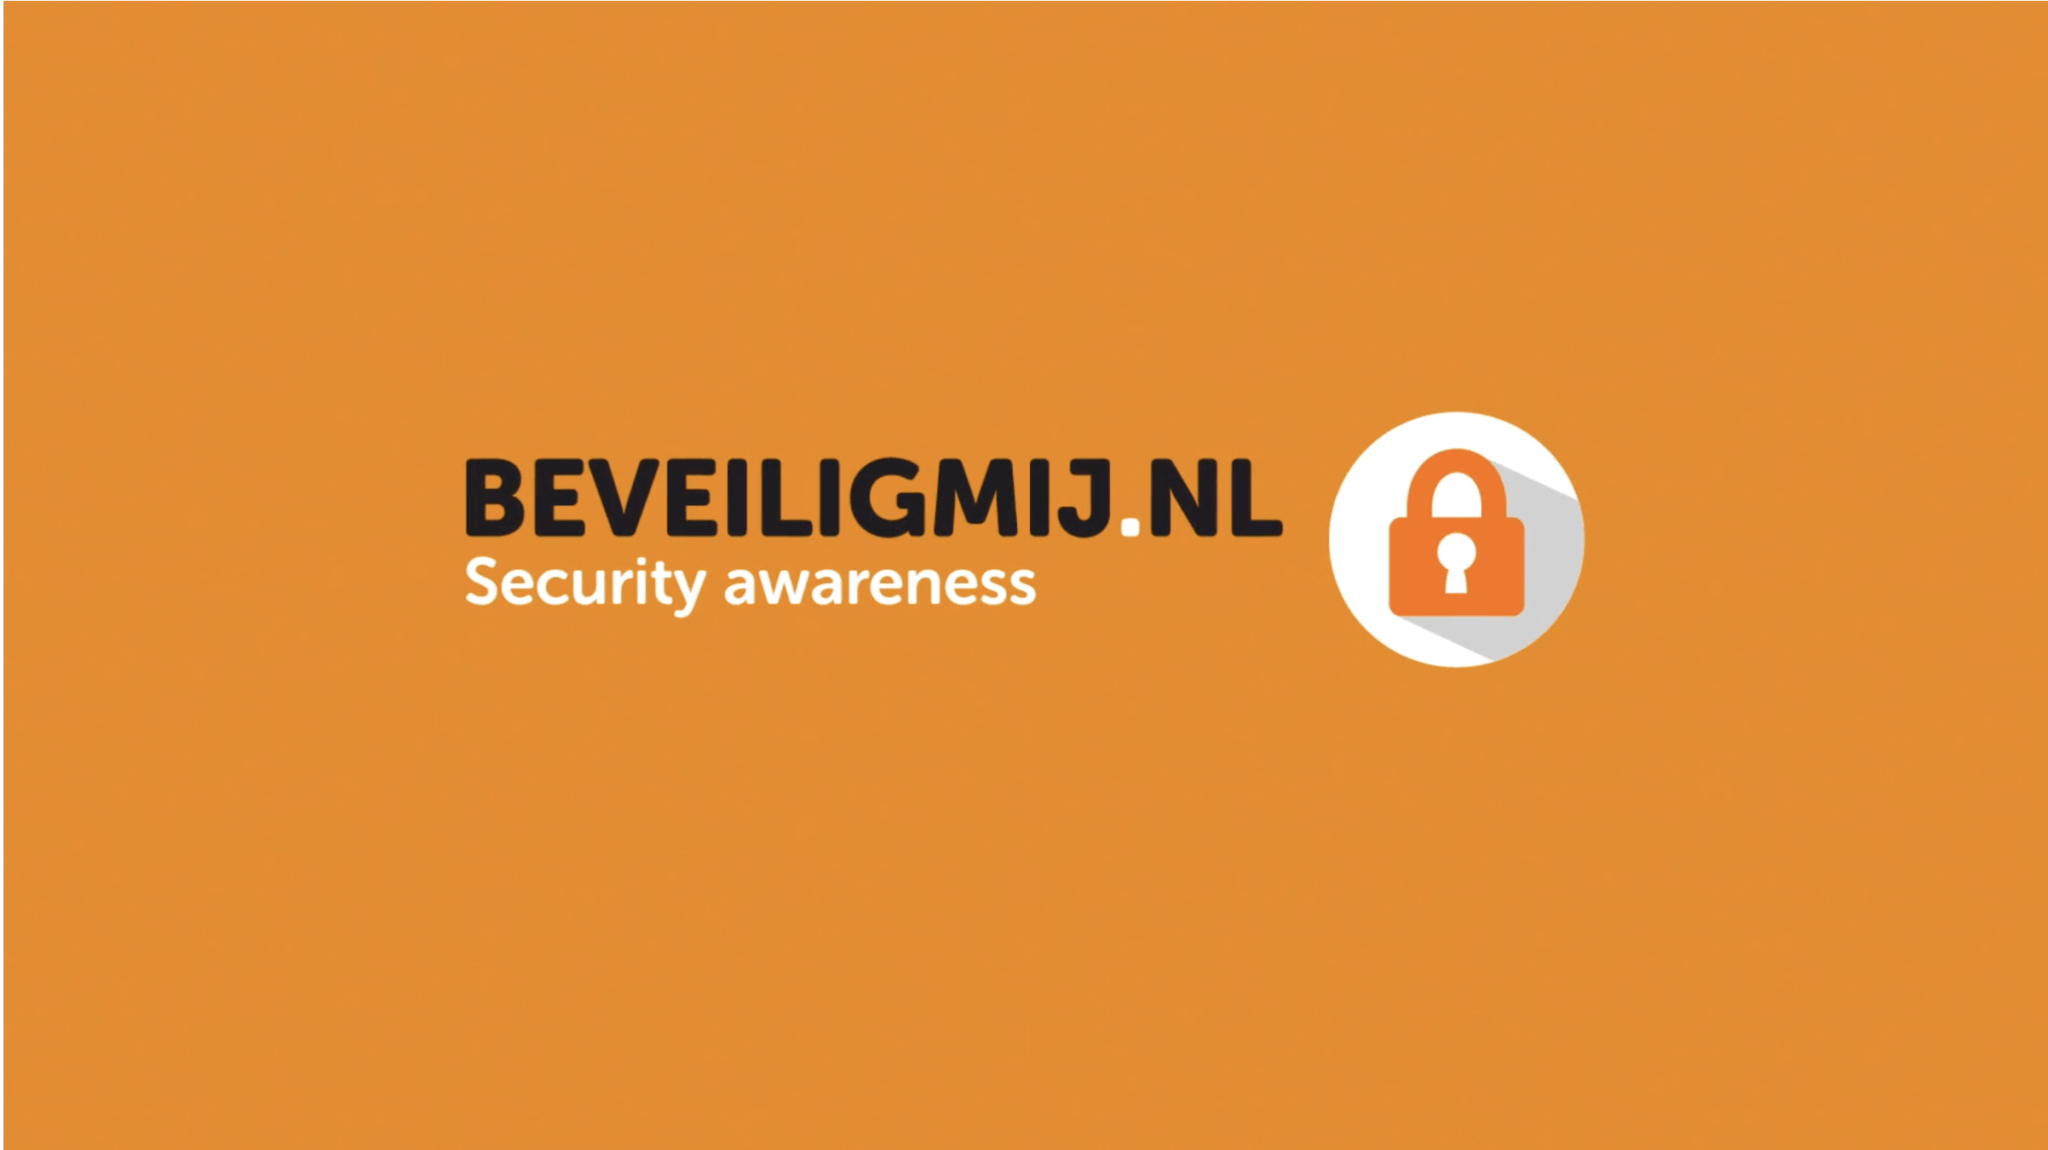 Website Beveiligmij.nl